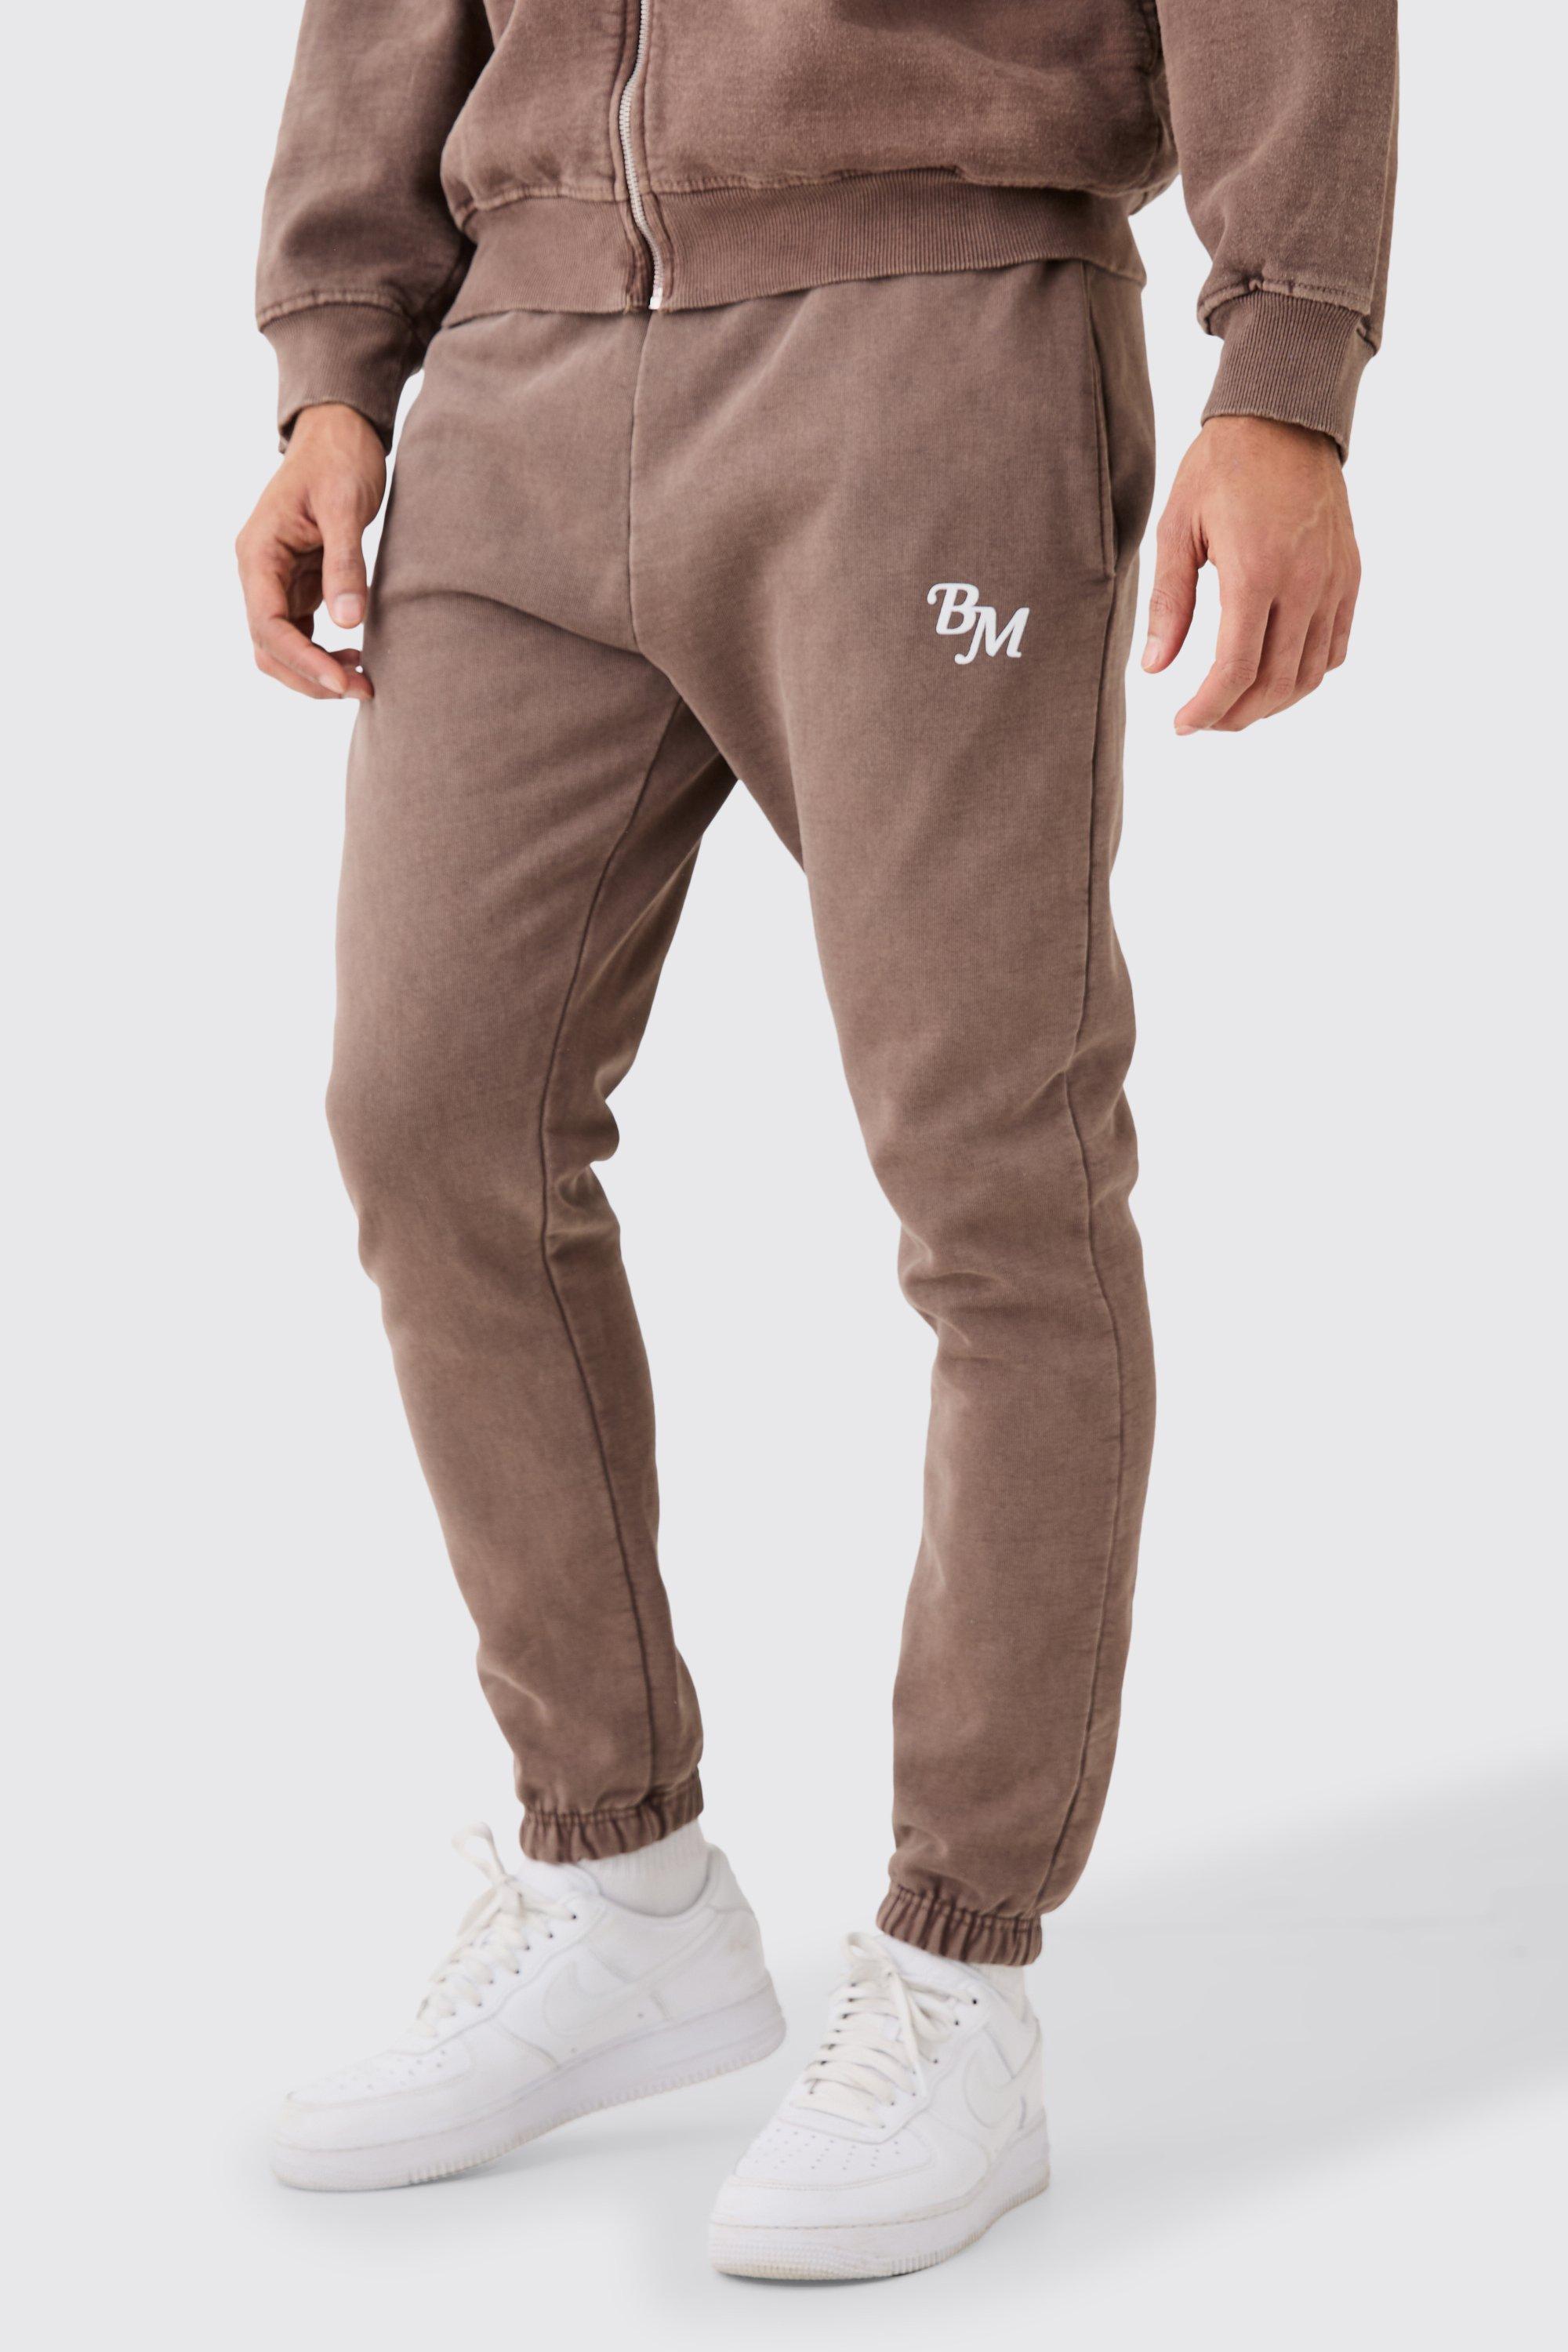 Image of Pantaloni tuta pesanti Slim Fit sovratinti con BM, Brown